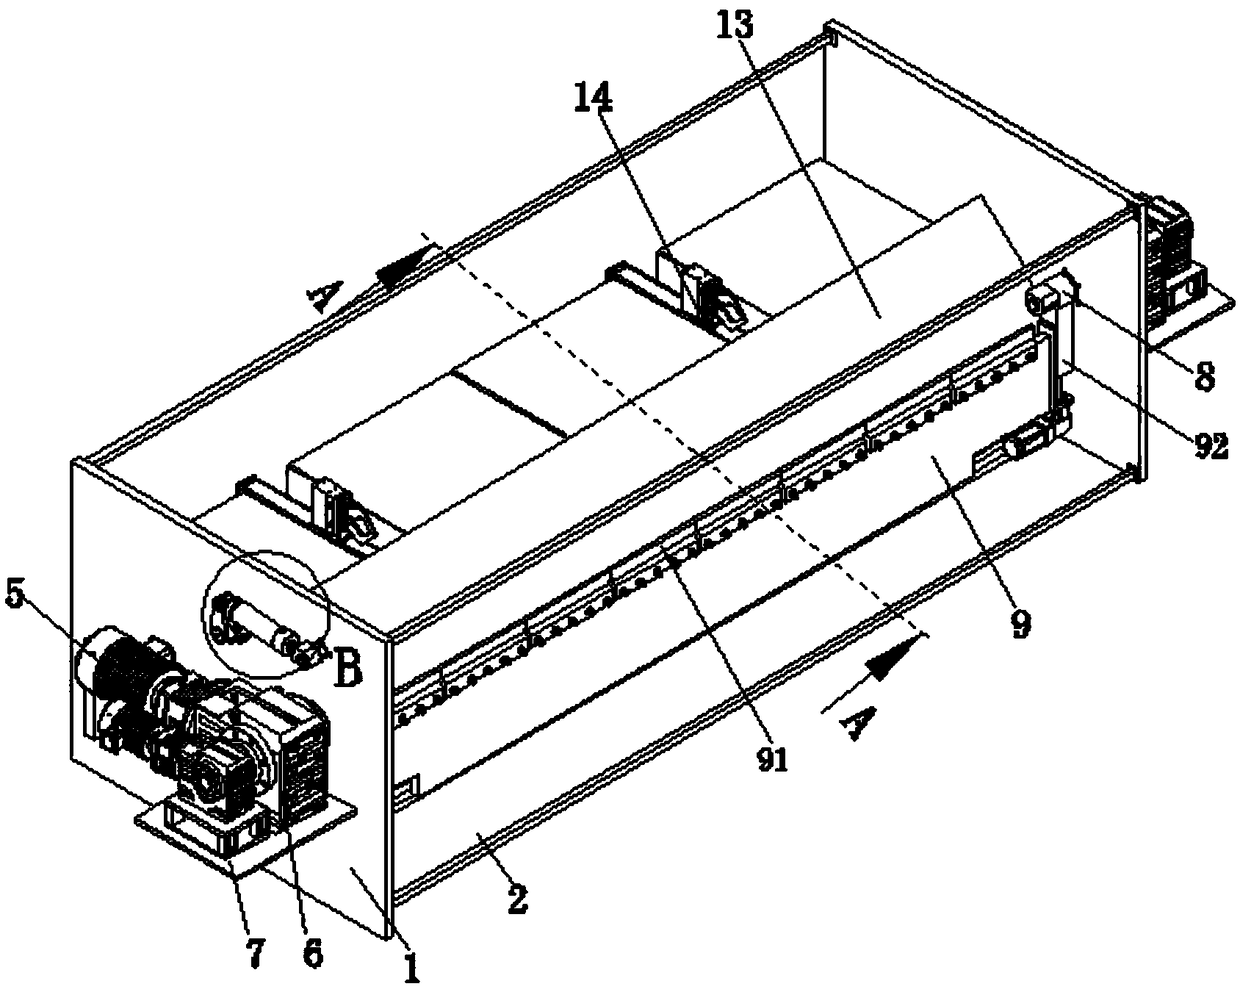 Veneer bidirectional automatic folding machine